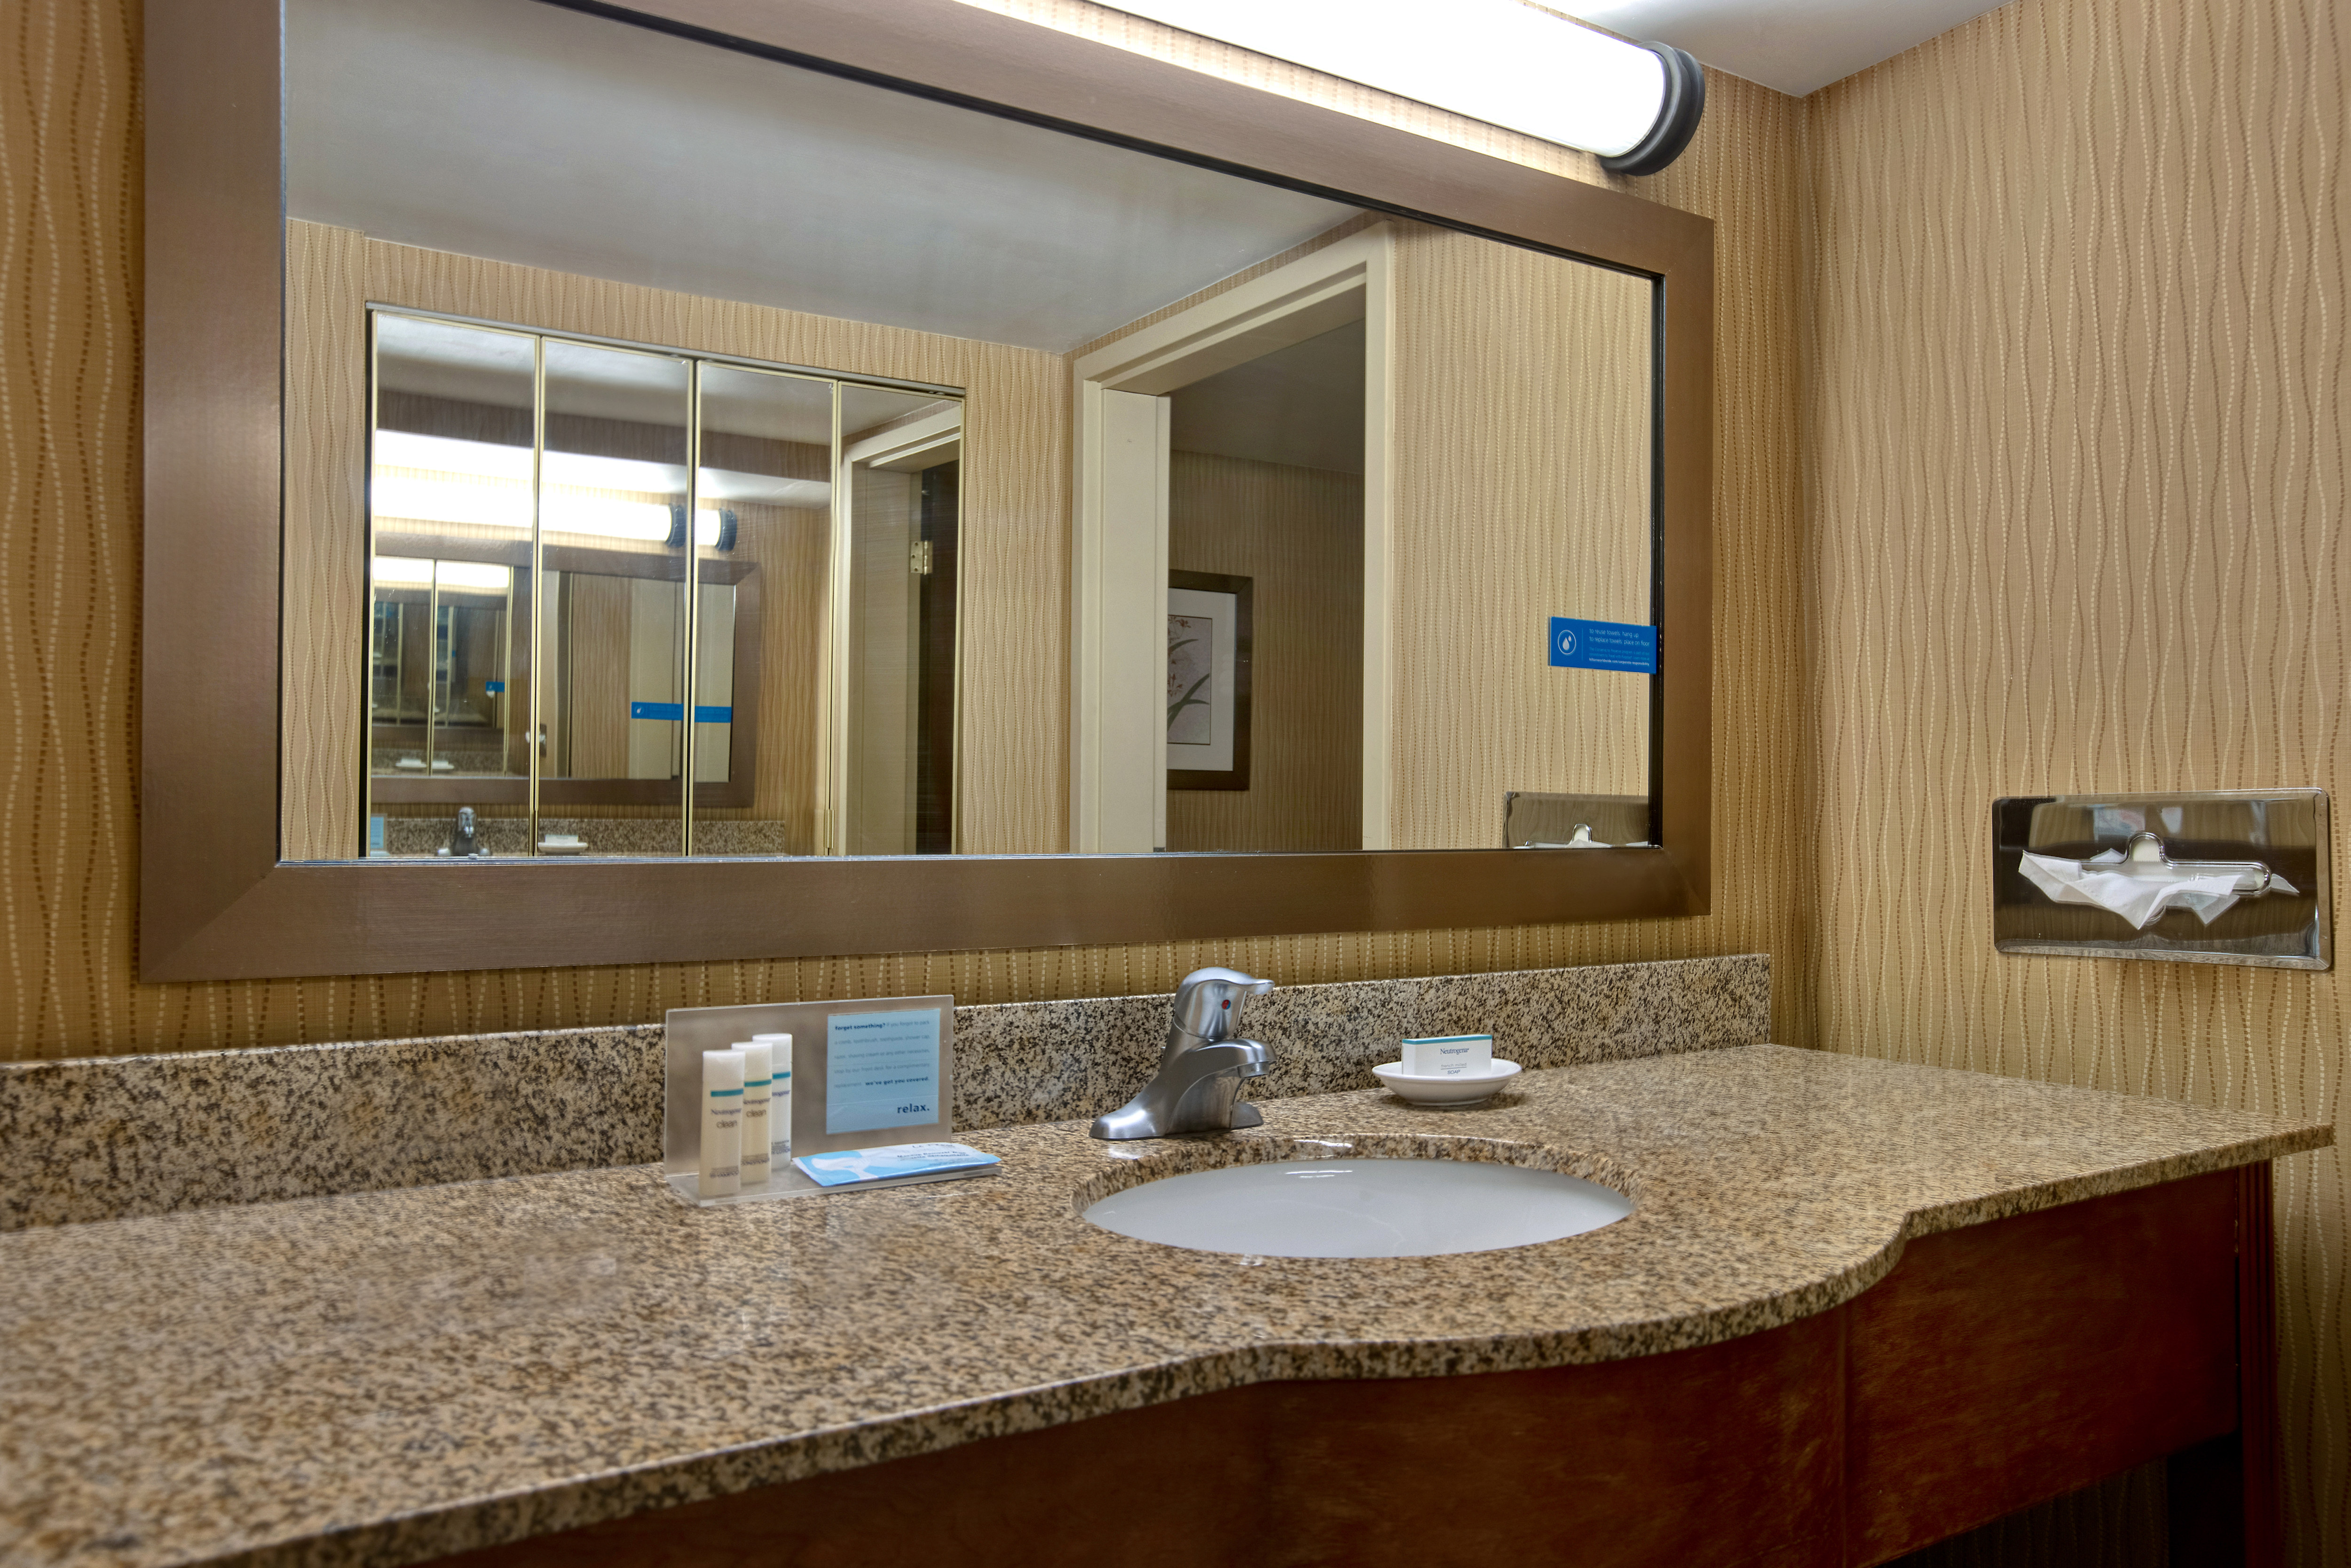 Guest Suite Bathroom Vanity